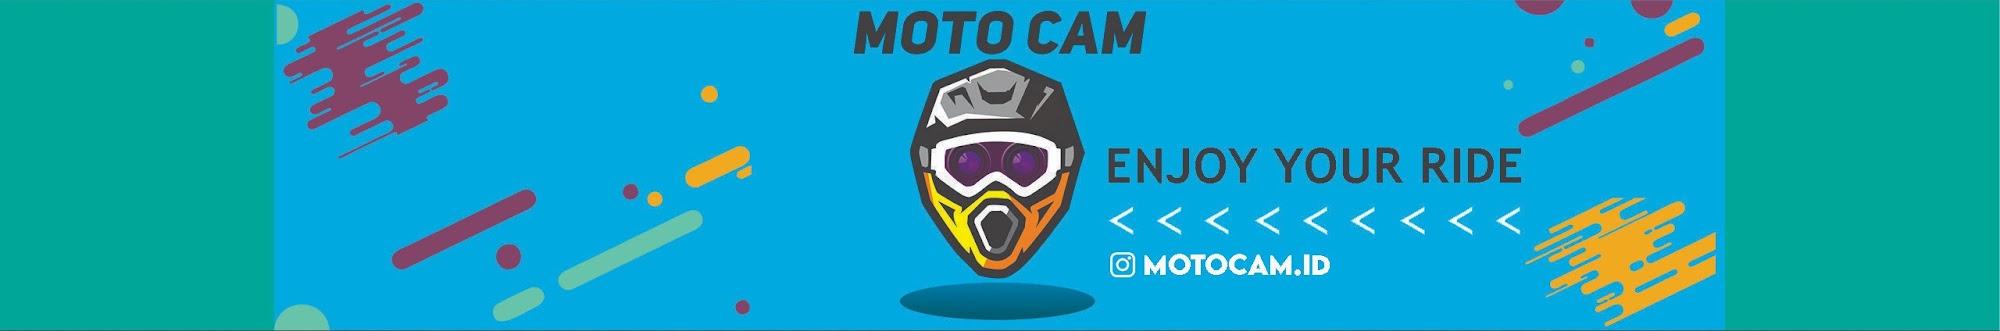 Moto Cam